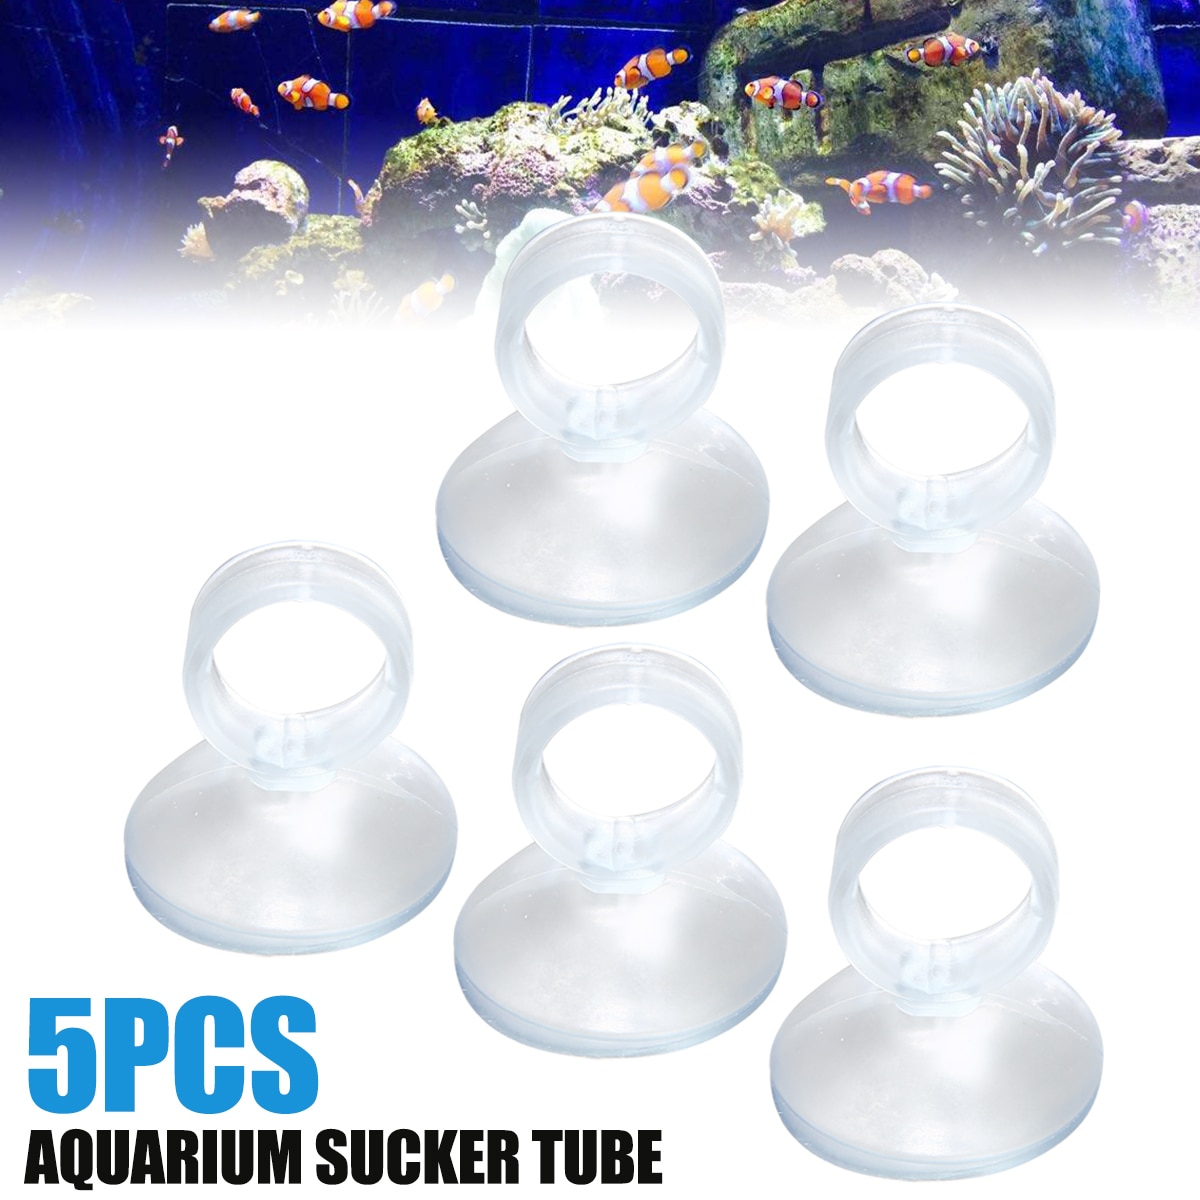 5 Pcs 3 Mm Aquarium Zuignap Sucker Clip Houder Voor 16 Mm Tube Pipe Heater Aquarium Aquarium Accessoires